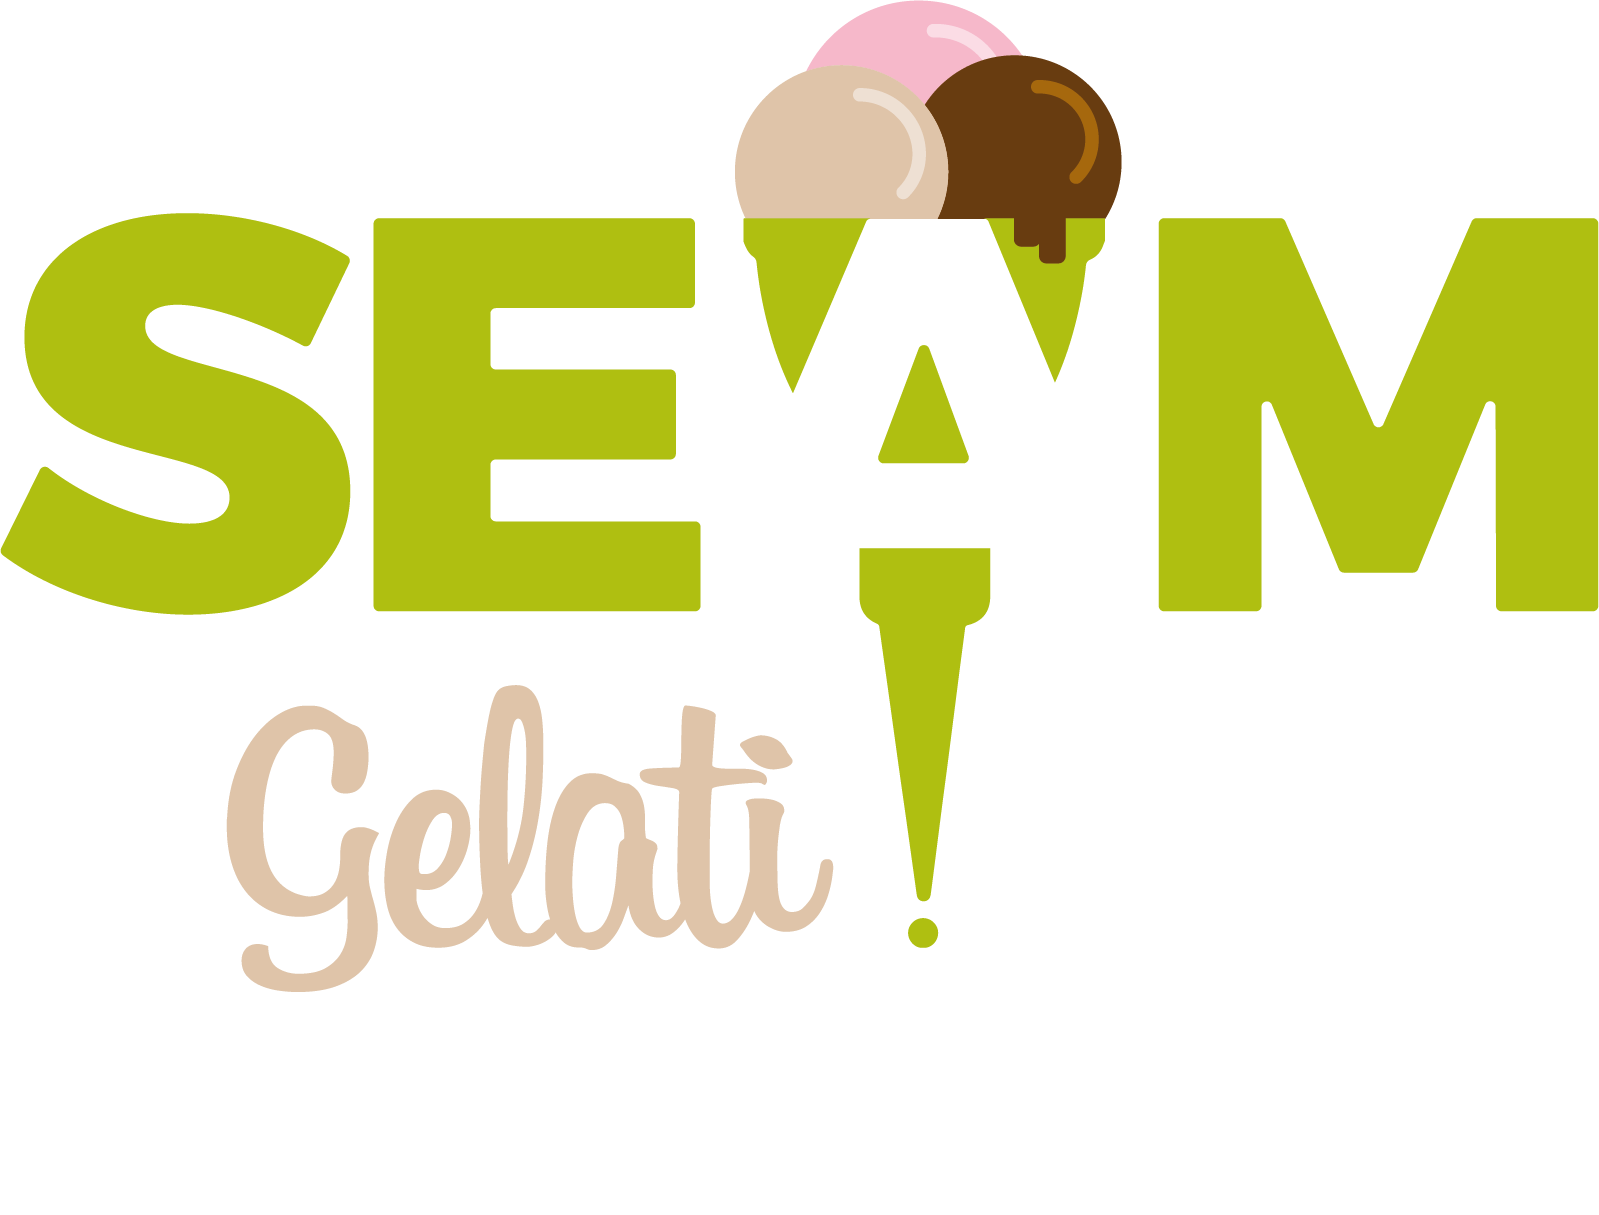 SEAM | Distribuzione prodotti per gelaterie e pasticcerie | Materie prime per gelaterie | Semilavorati per gelaterie | Corsi per Gelatieri | Vendita on Line | Torino